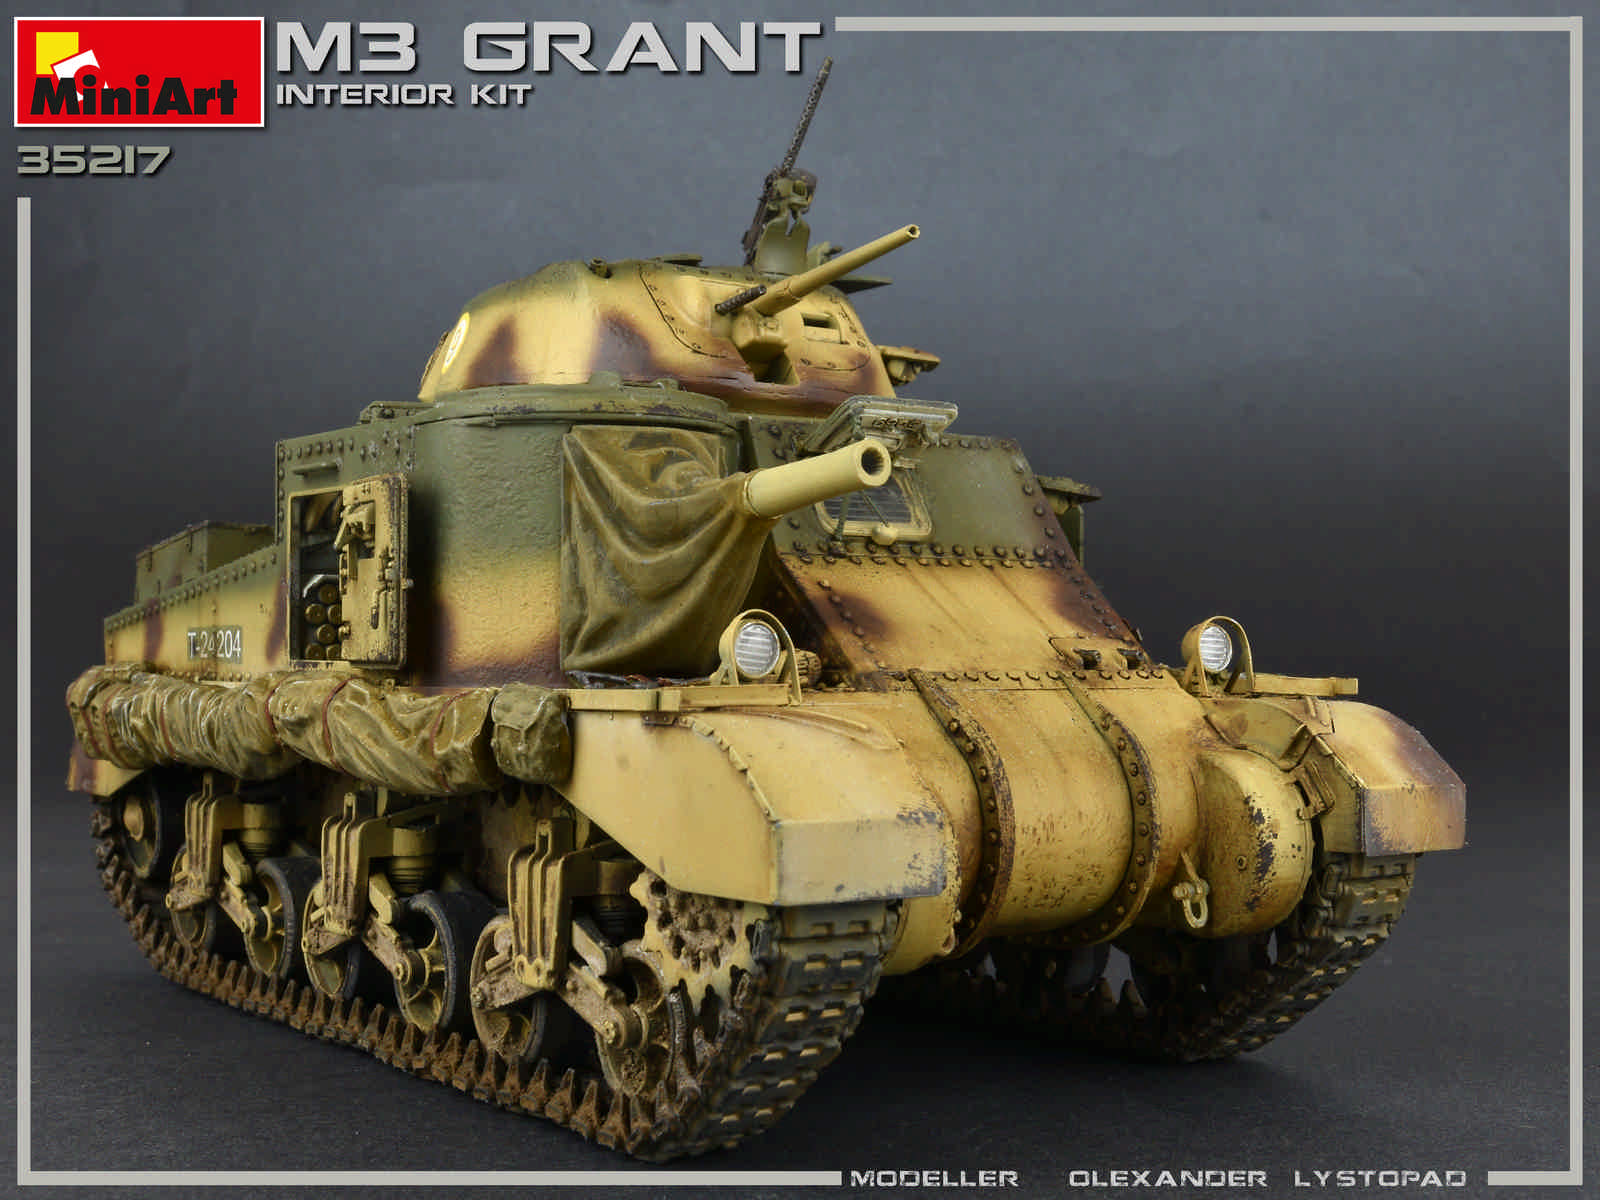 Grant mk.i interior kit 1:35 mezzi militari scala miniart 